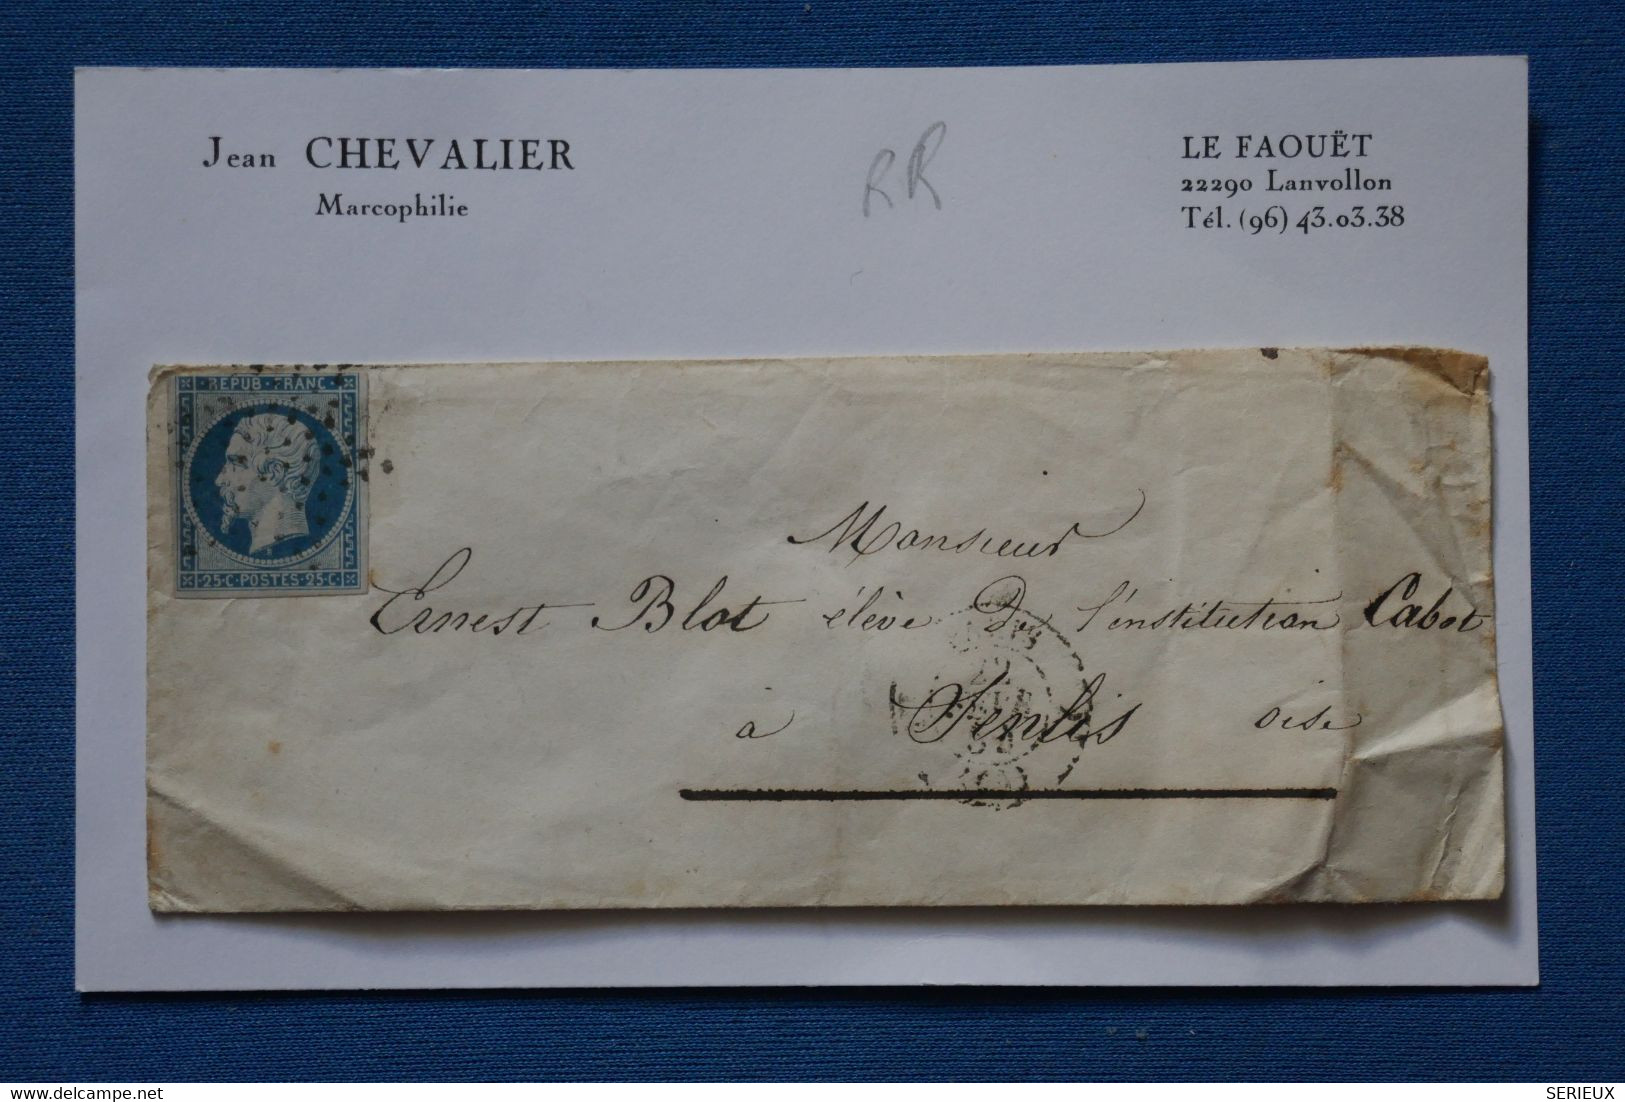 E3 FRANCE  BELLE LETTRE   1855 ETOILE DE PARIS   POUR SENLIS + NAPOLEON N°10 +AFFR. INTERESSANT - - 1852 Louis-Napoléon